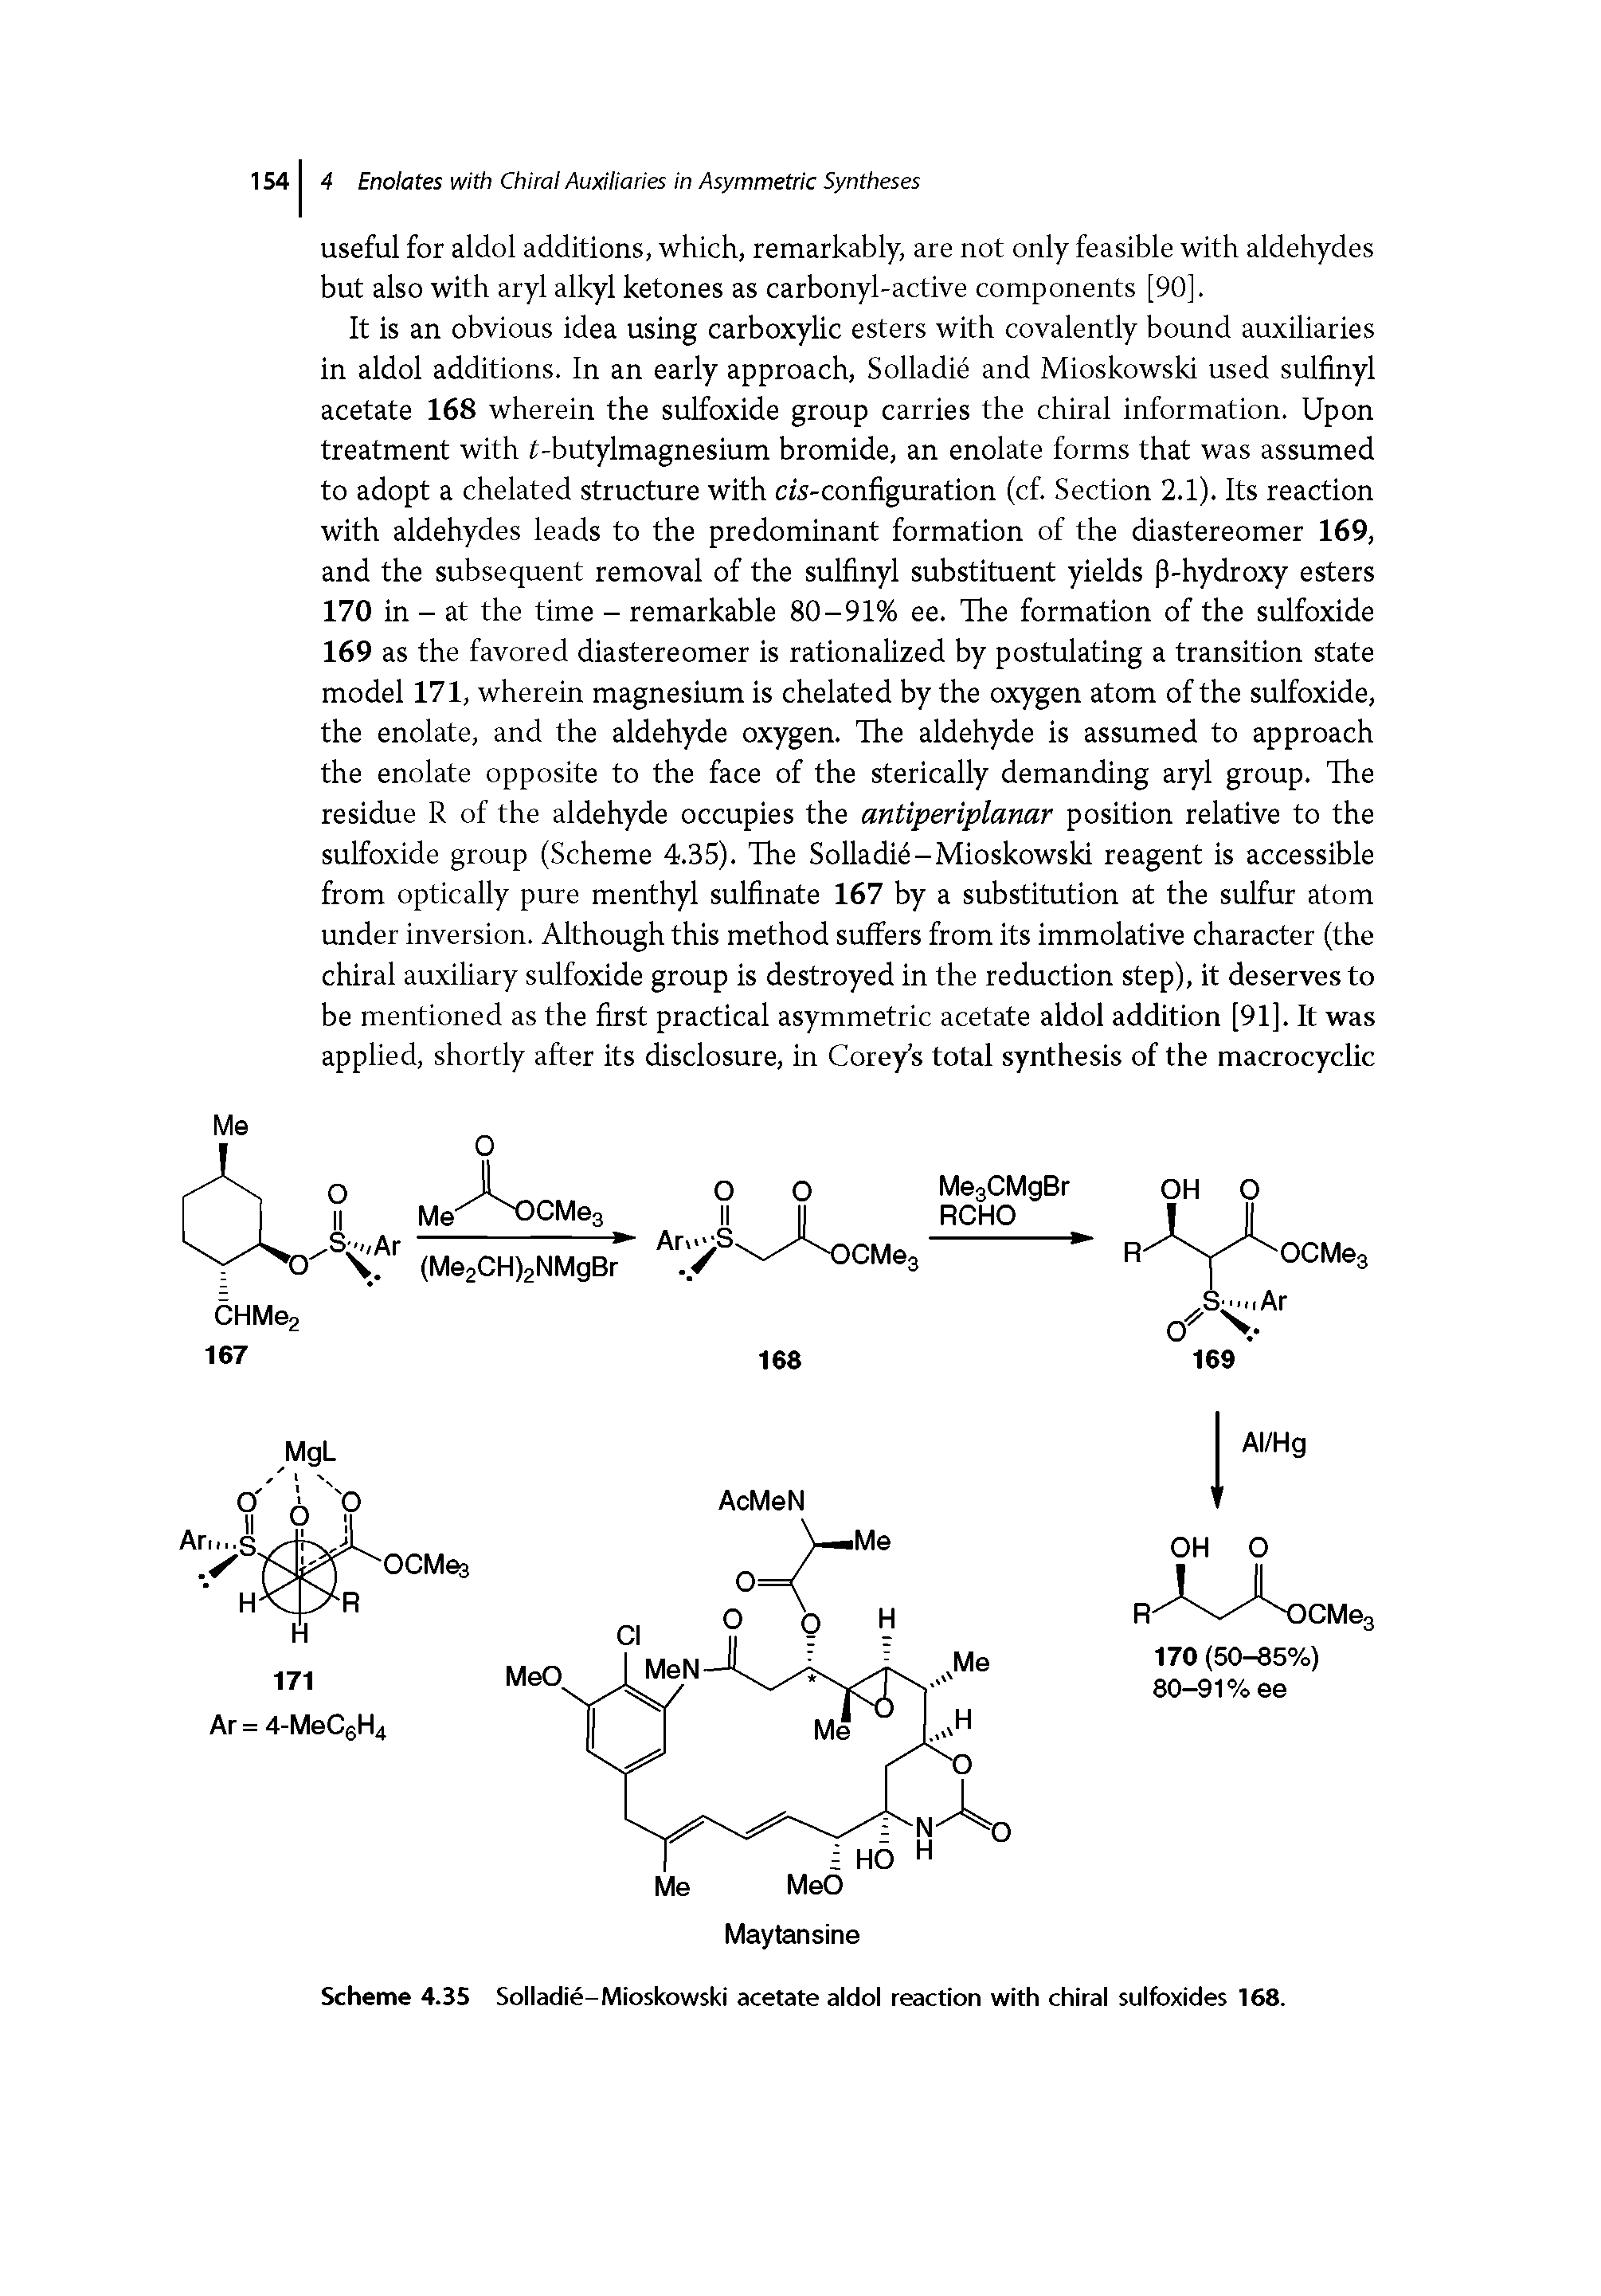 Scheme 4.35 Solladie-Mioskowski acetate aldol reaction with chiral sulfoxides 168.